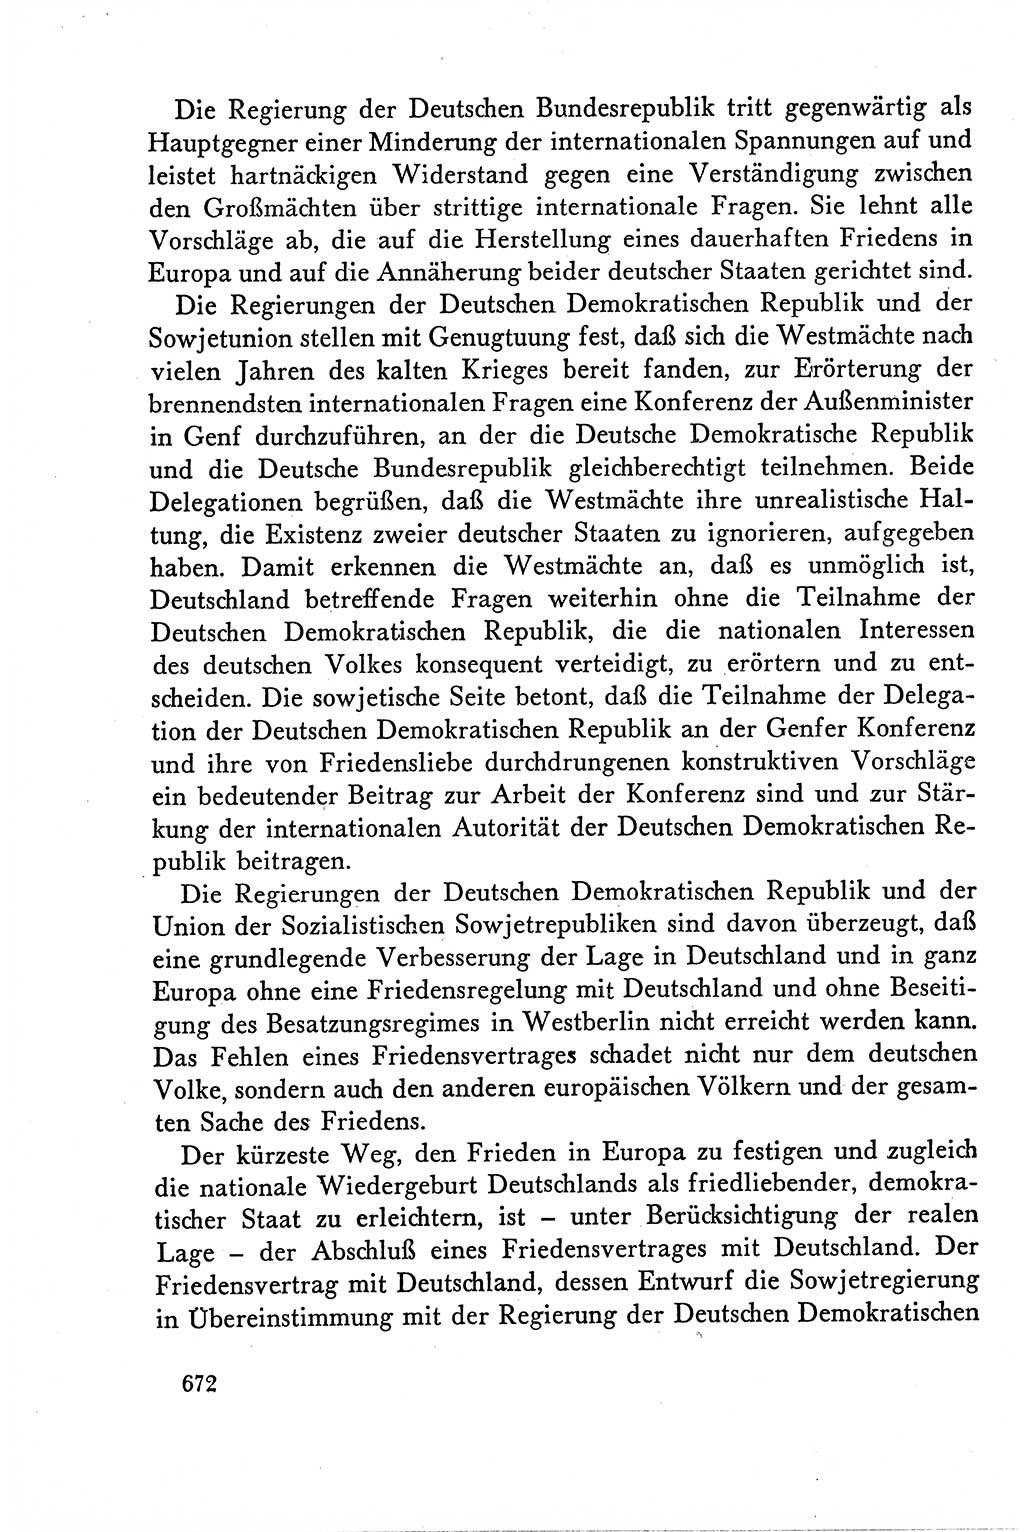 Dokumente der Sozialistischen Einheitspartei Deutschlands (SED) [Deutsche Demokratische Republik (DDR)] 1958-1959, Seite 672 (Dok. SED DDR 1958-1959, S. 672)